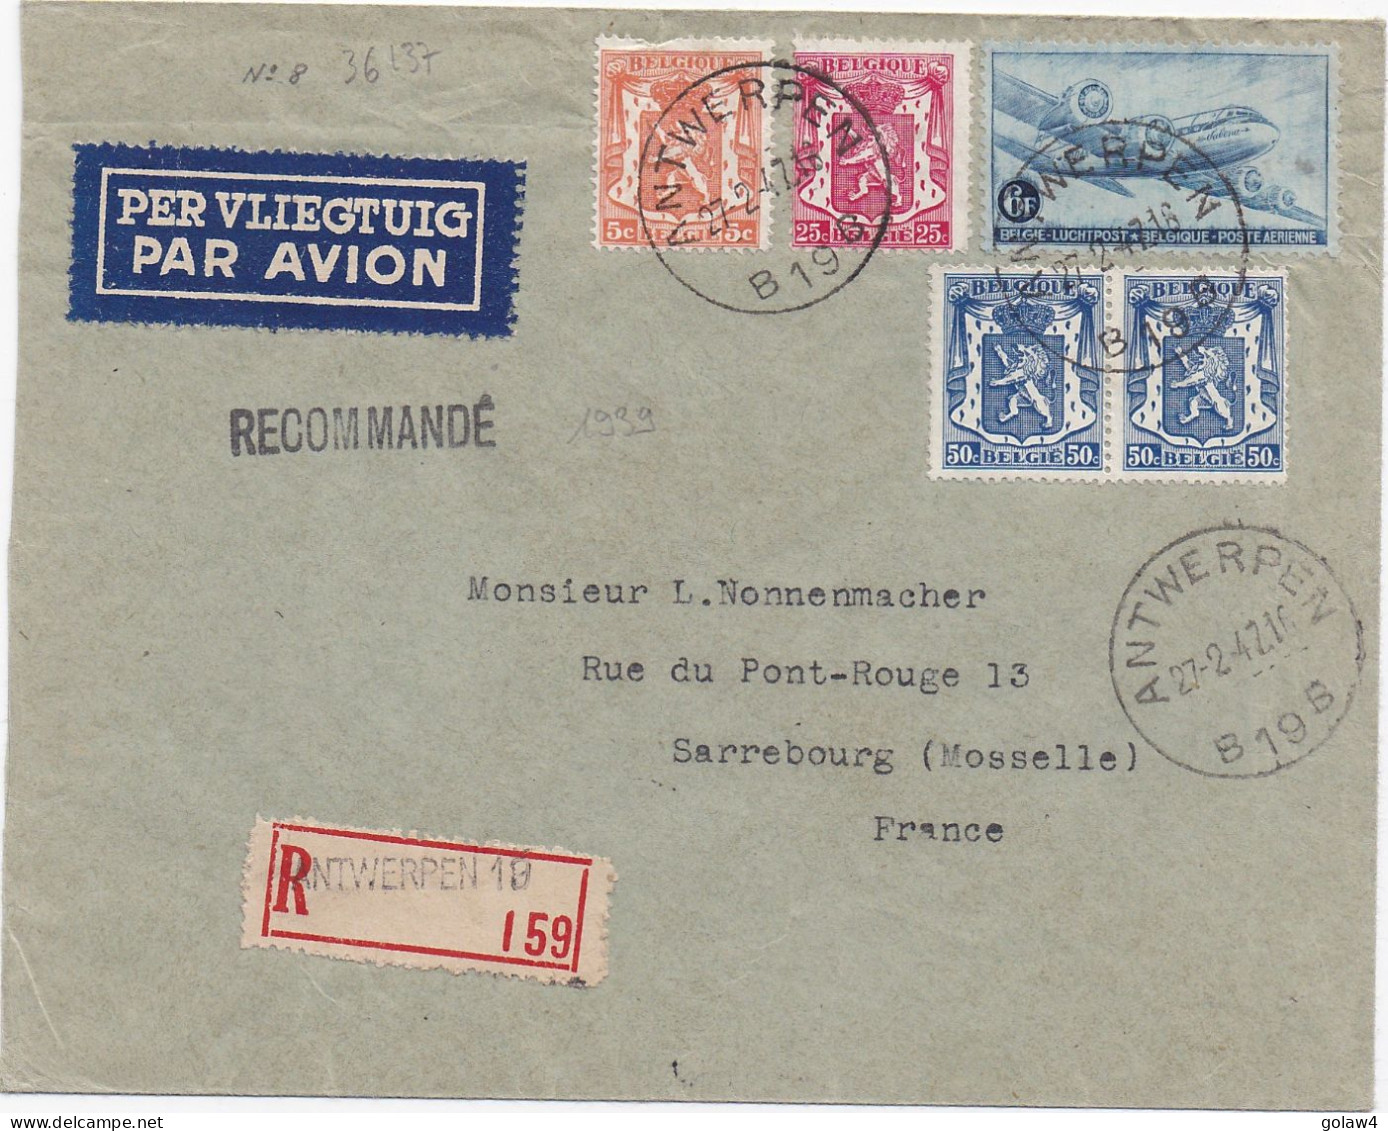 36137# POSTE AERIENNE LETTRE RECOMMANDEE PAR AVION Obl ANTWERPEN 1947 SARREBOURG MOSELLE - Lettres & Documents